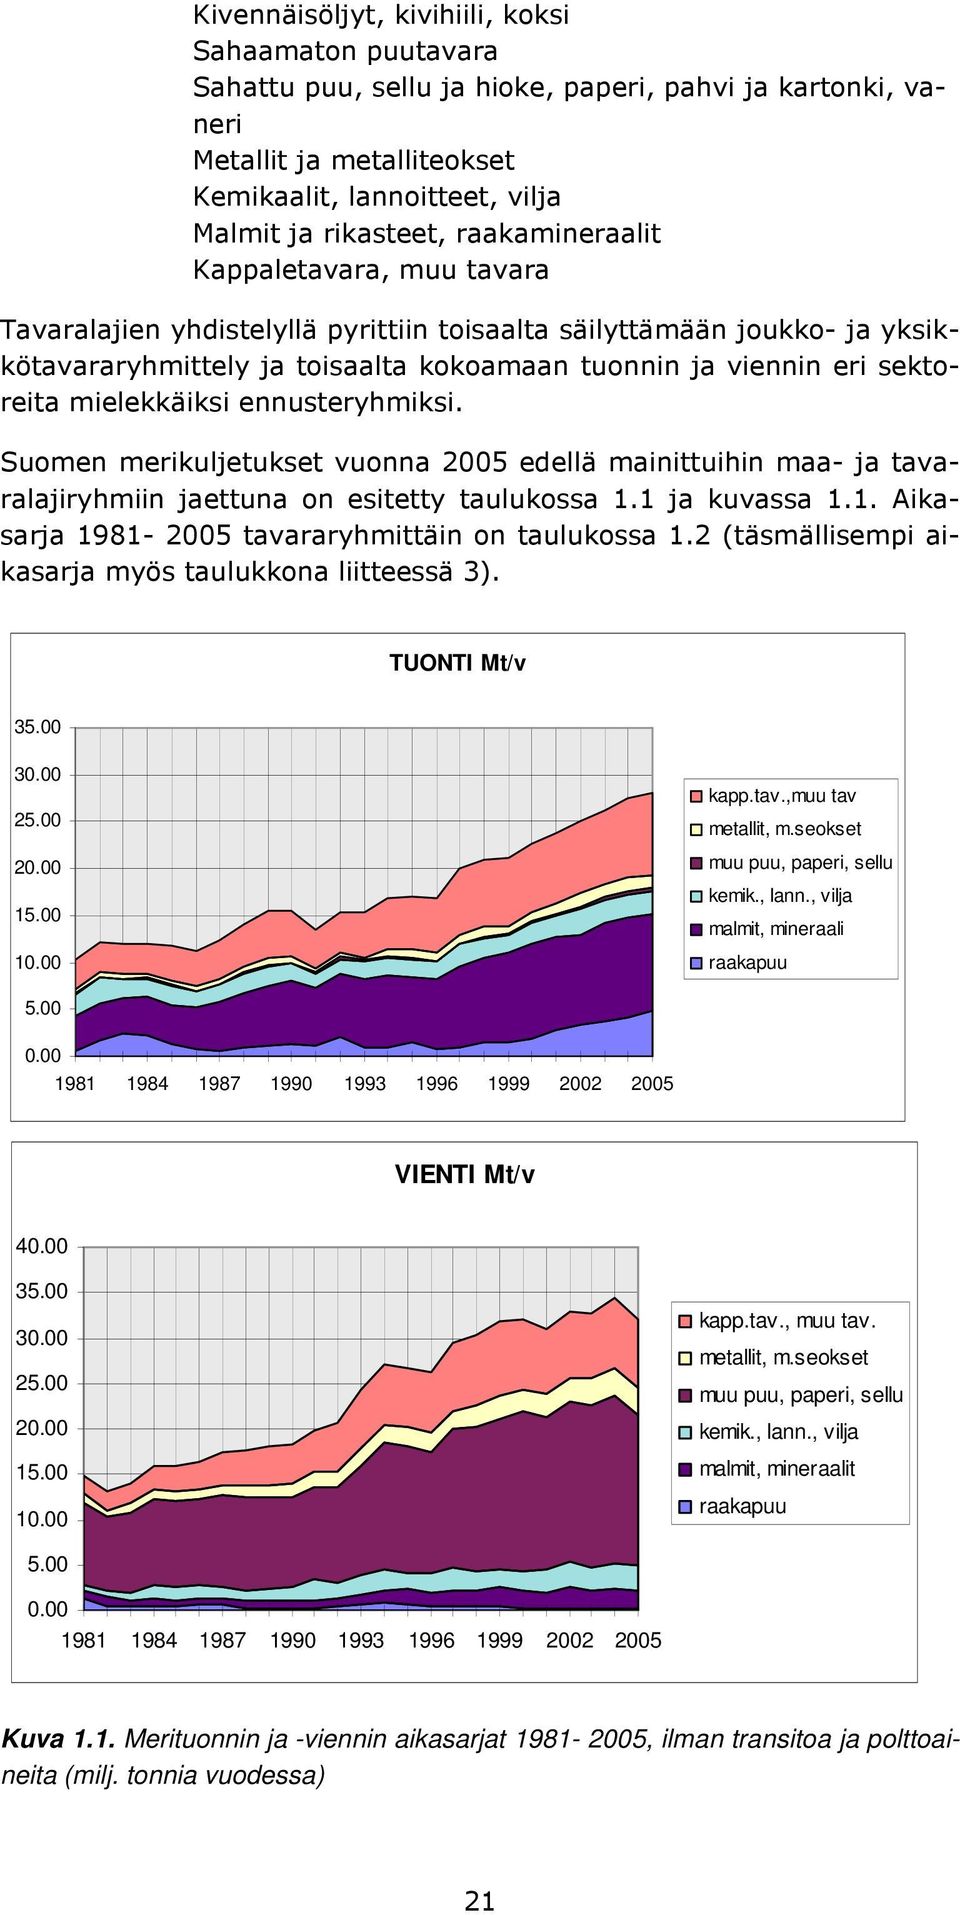 Suomen merikuljetukset vuonna 2005 edellä mainittuihin maa- tavaralajiryhmiin ettuna on esitetty taulukossa 1.1 kuvassa 1.1. Aikasar 1981-2005 tavararyhmittäin on taulukossa 1.